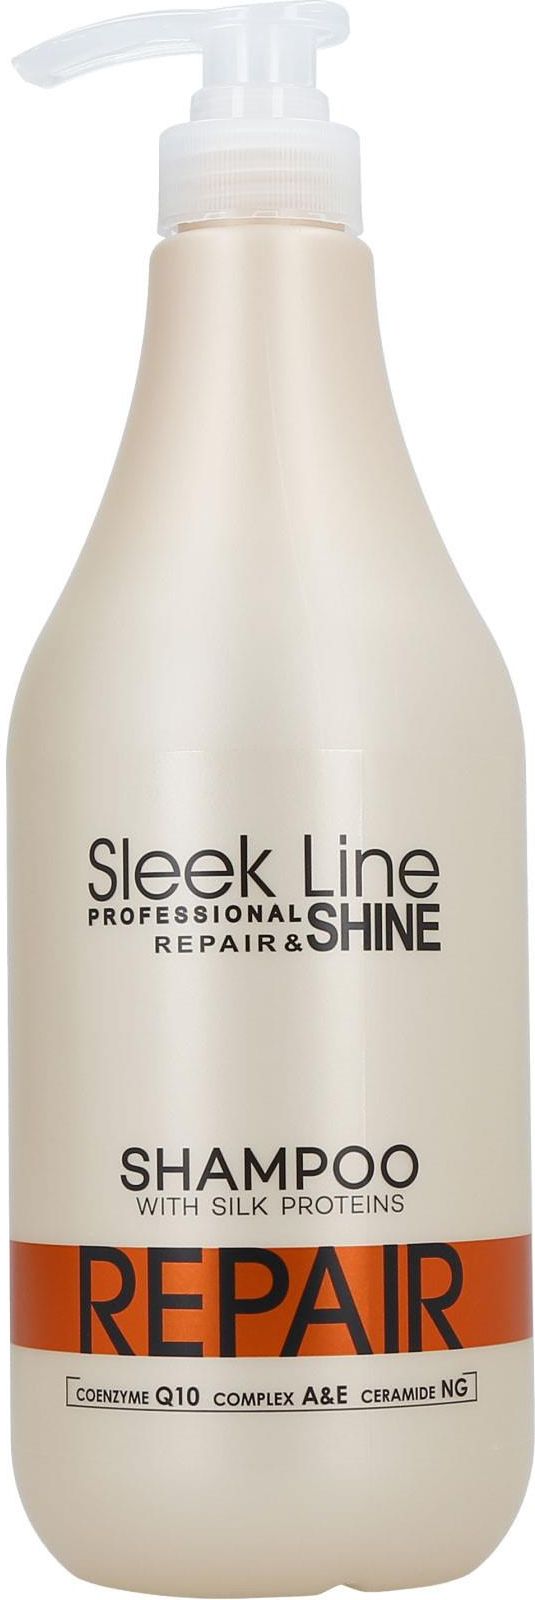 szampon sleek line repair opinie